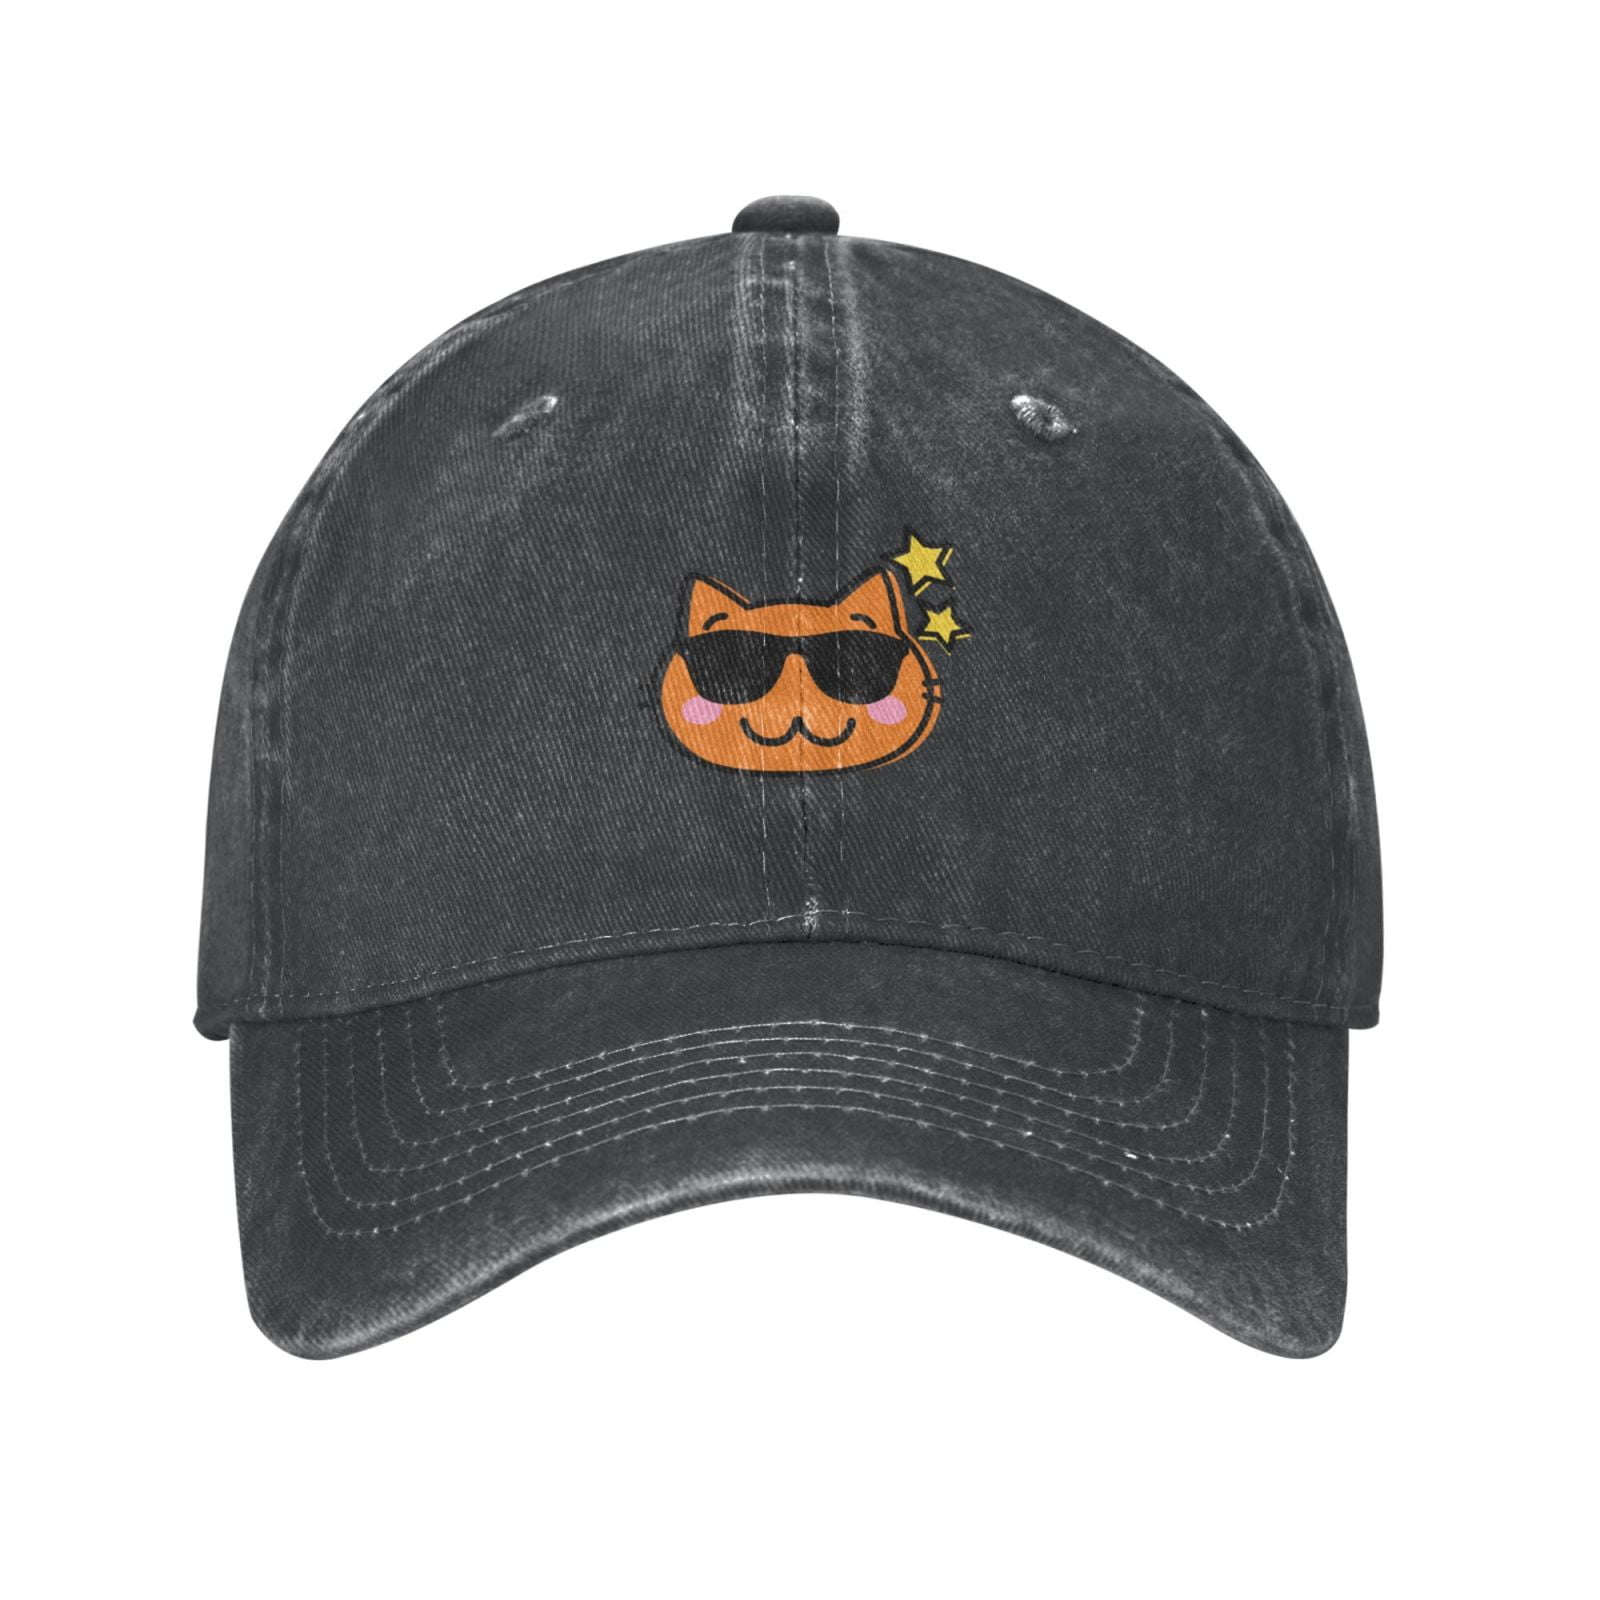 Mens Baseball Cap, Outdoor Casual Deep Hat Adjustable Cowboy Cap Cat- - Curved Cartoon Happy Heather Brim Hat, Classic Sports